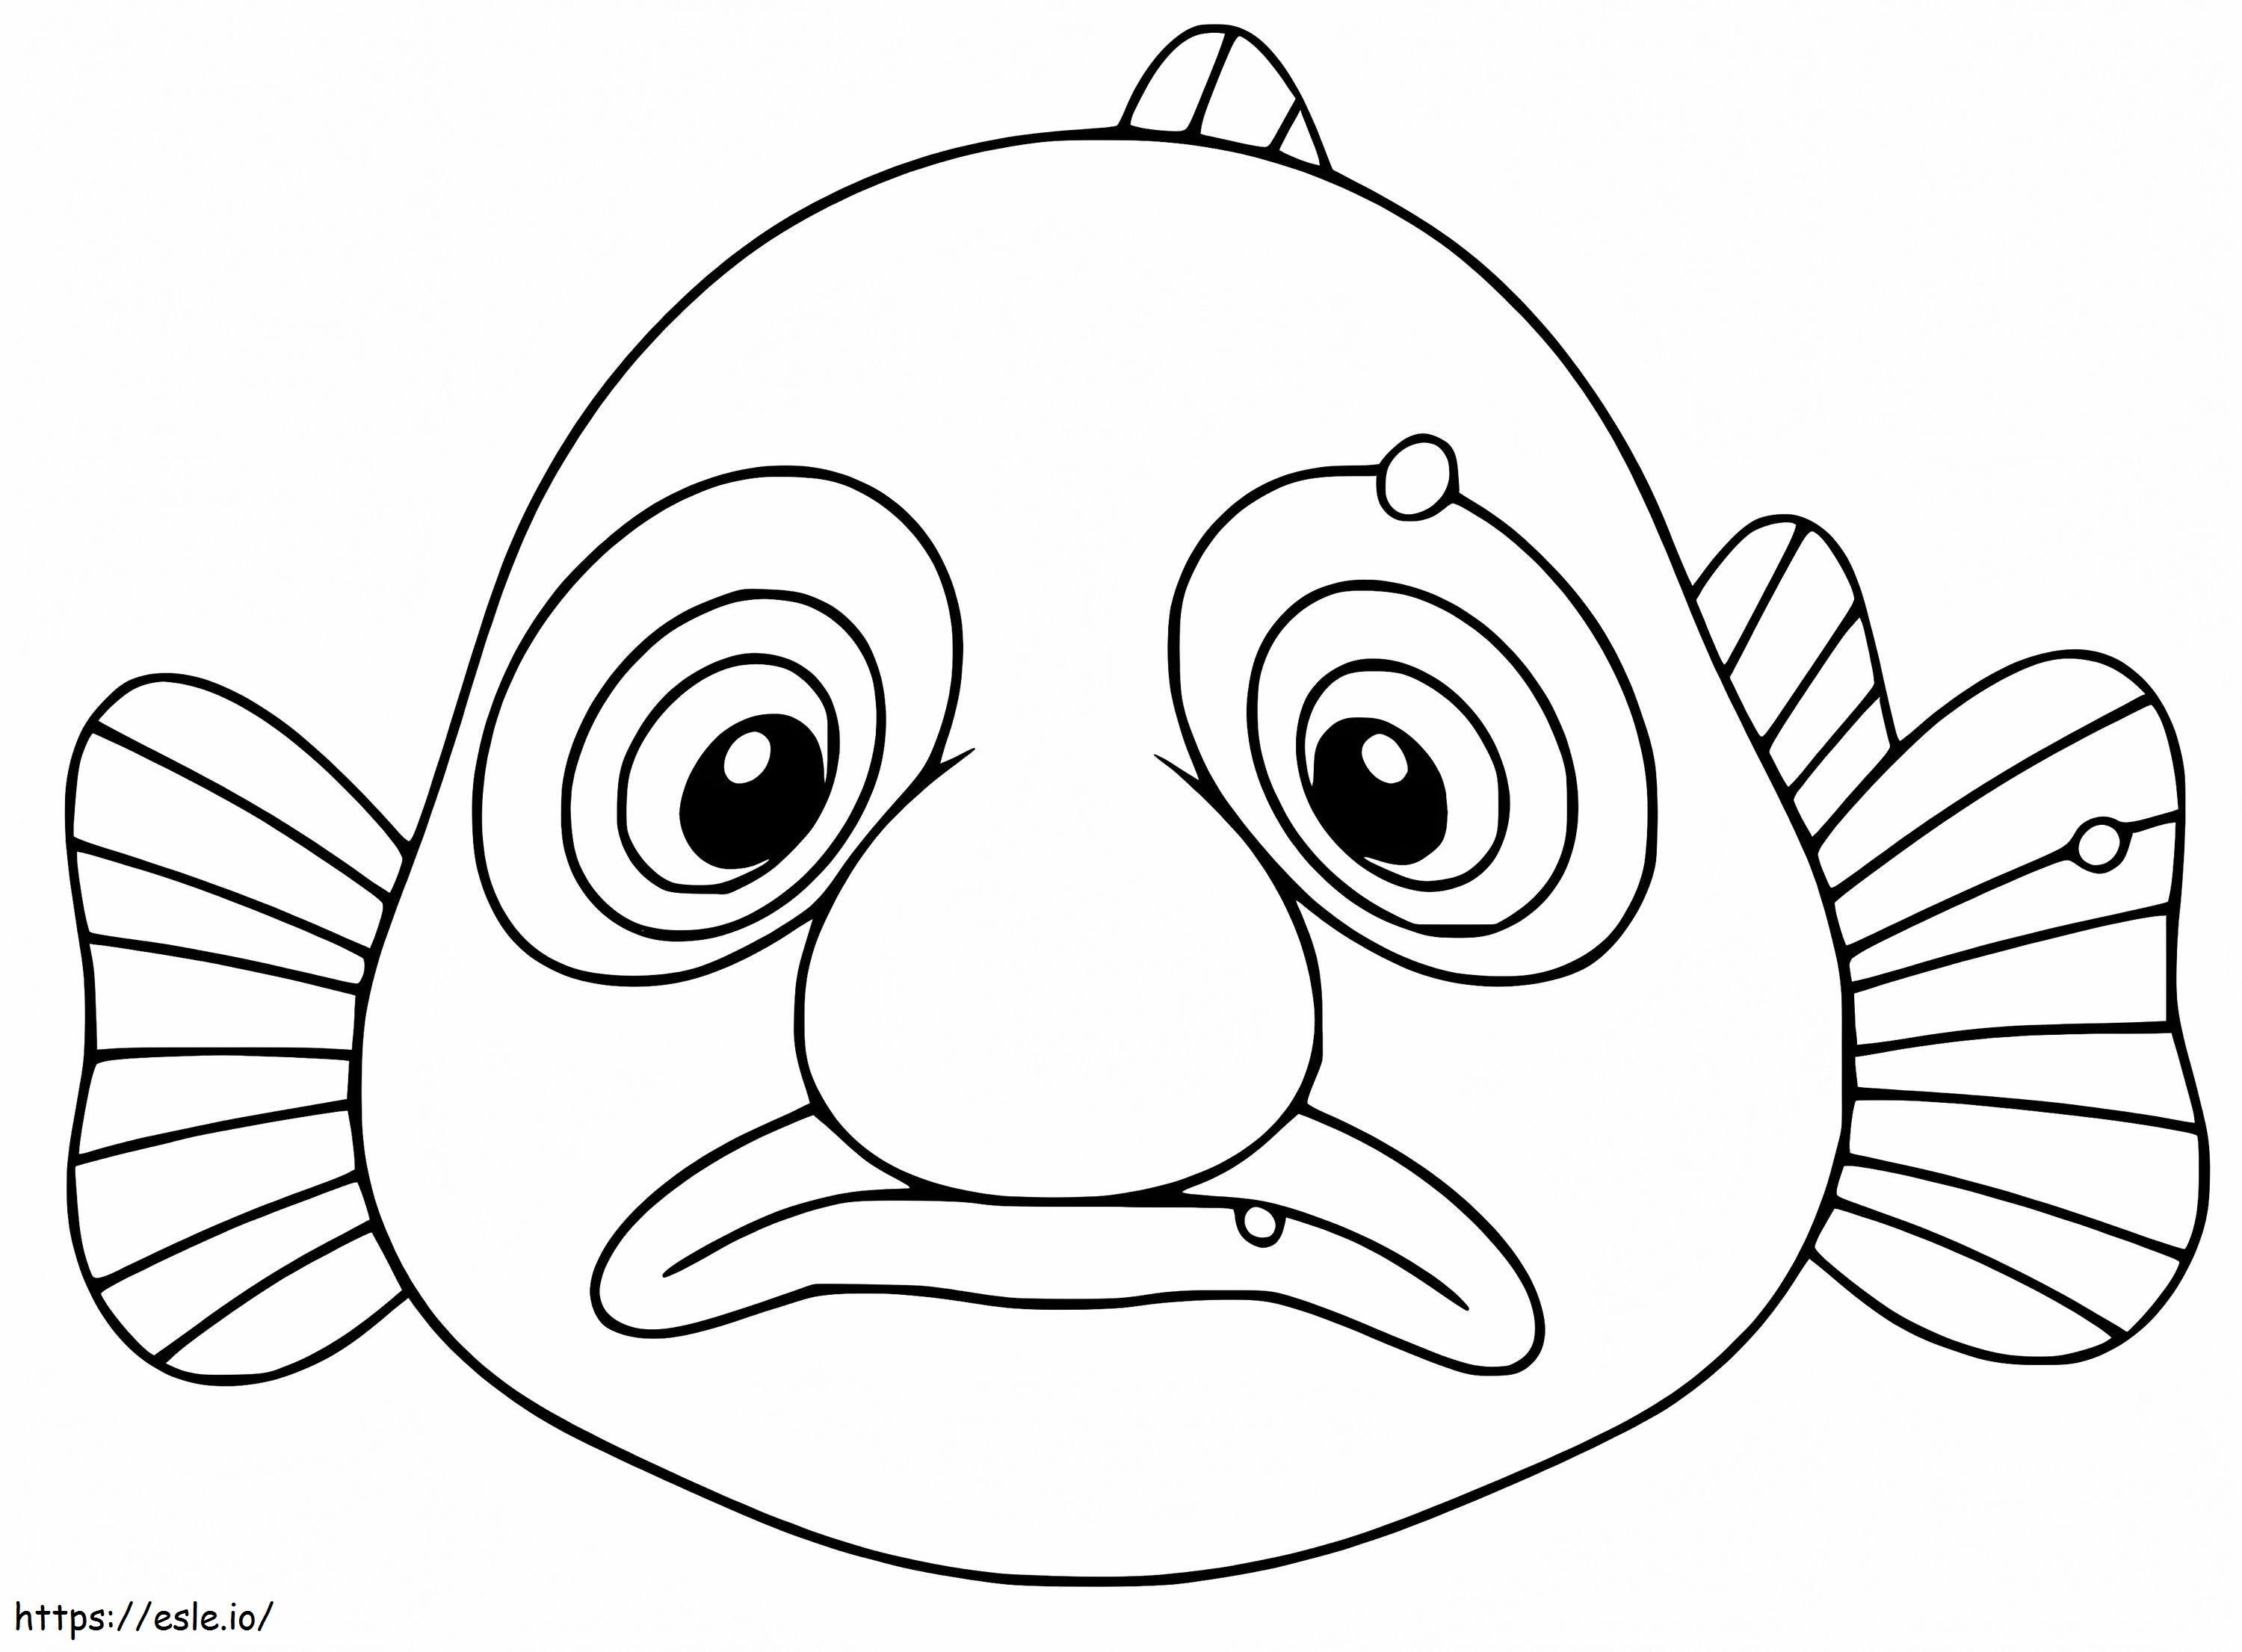 Cartoon-Klecksfisch ausmalbilder